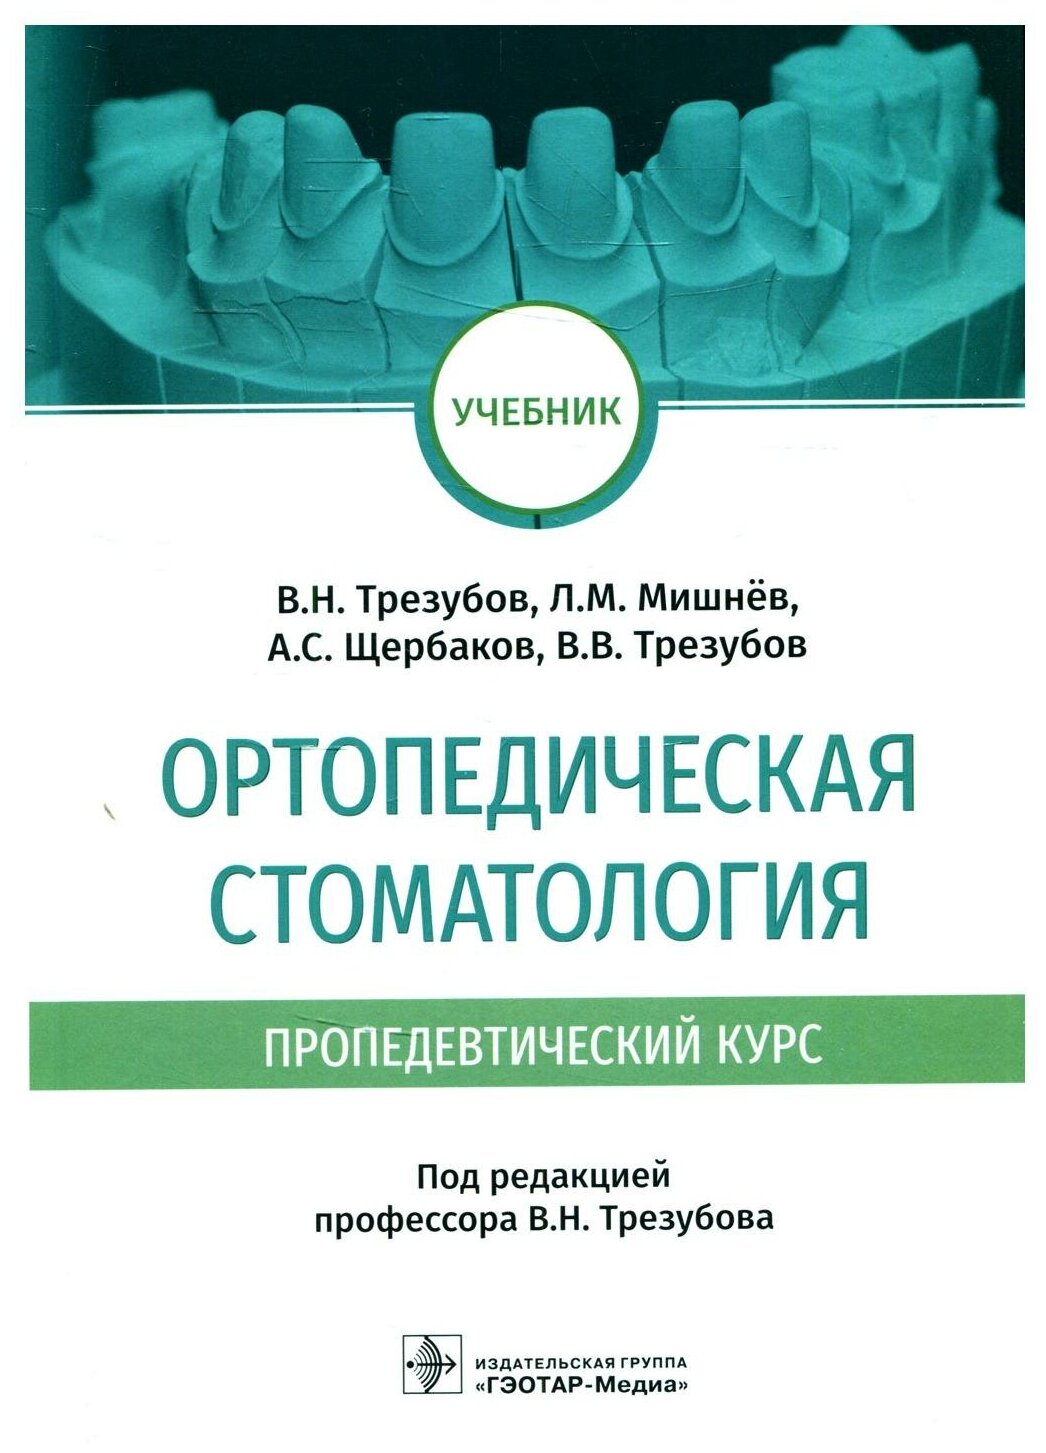 Ортопедическая стоматология пропедевтический курс учебник - фото №1